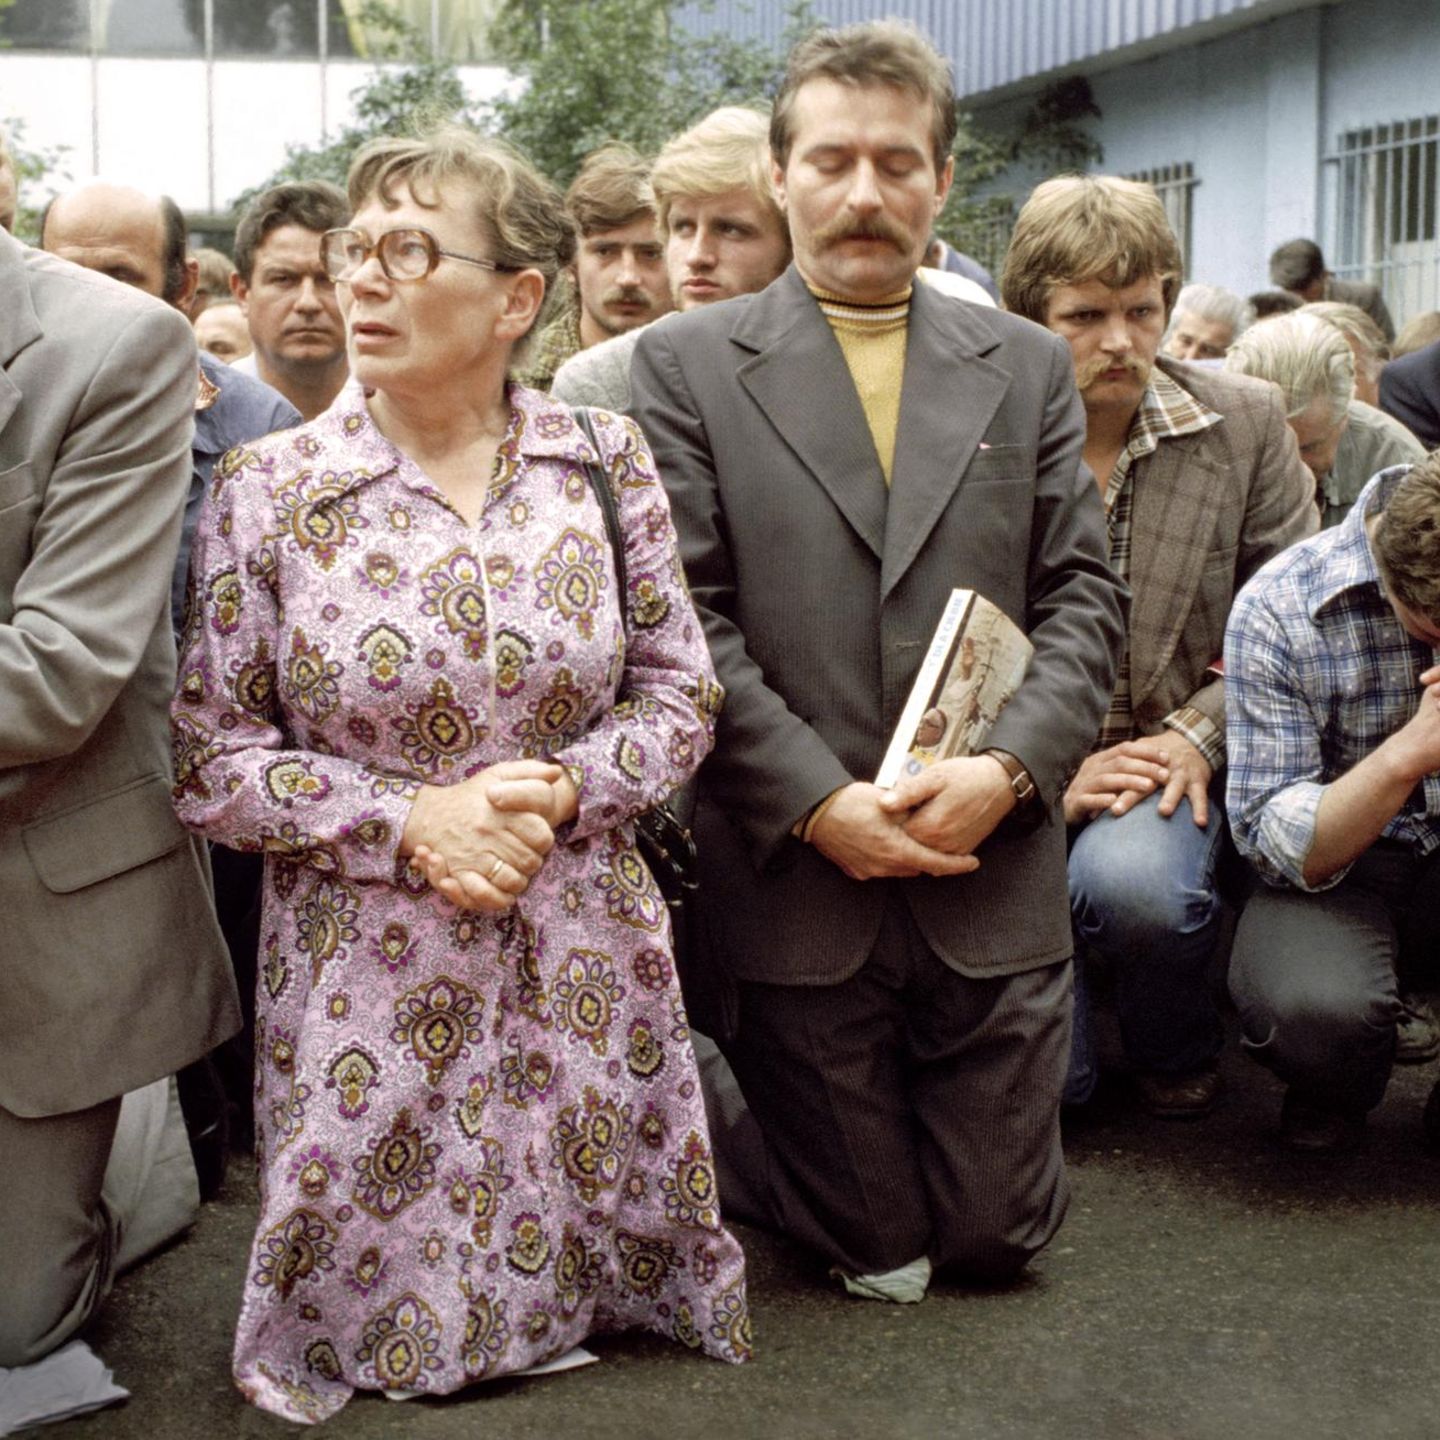 Betend zeigen Streikende 1980 vor der Lenin-Werft in Danzig ihren Protest. Vorn kniet die Kranführerin Anna Walentynowicz, deren Entlassung wegen ihres Einsatzes für die Rechte der Belegschaft einer der Auslöser für den Ausstand war. Rechts neben ihr Lech Wałęsa, einstiger Werft-Elektriker und nun Anführer des Streikkomitees